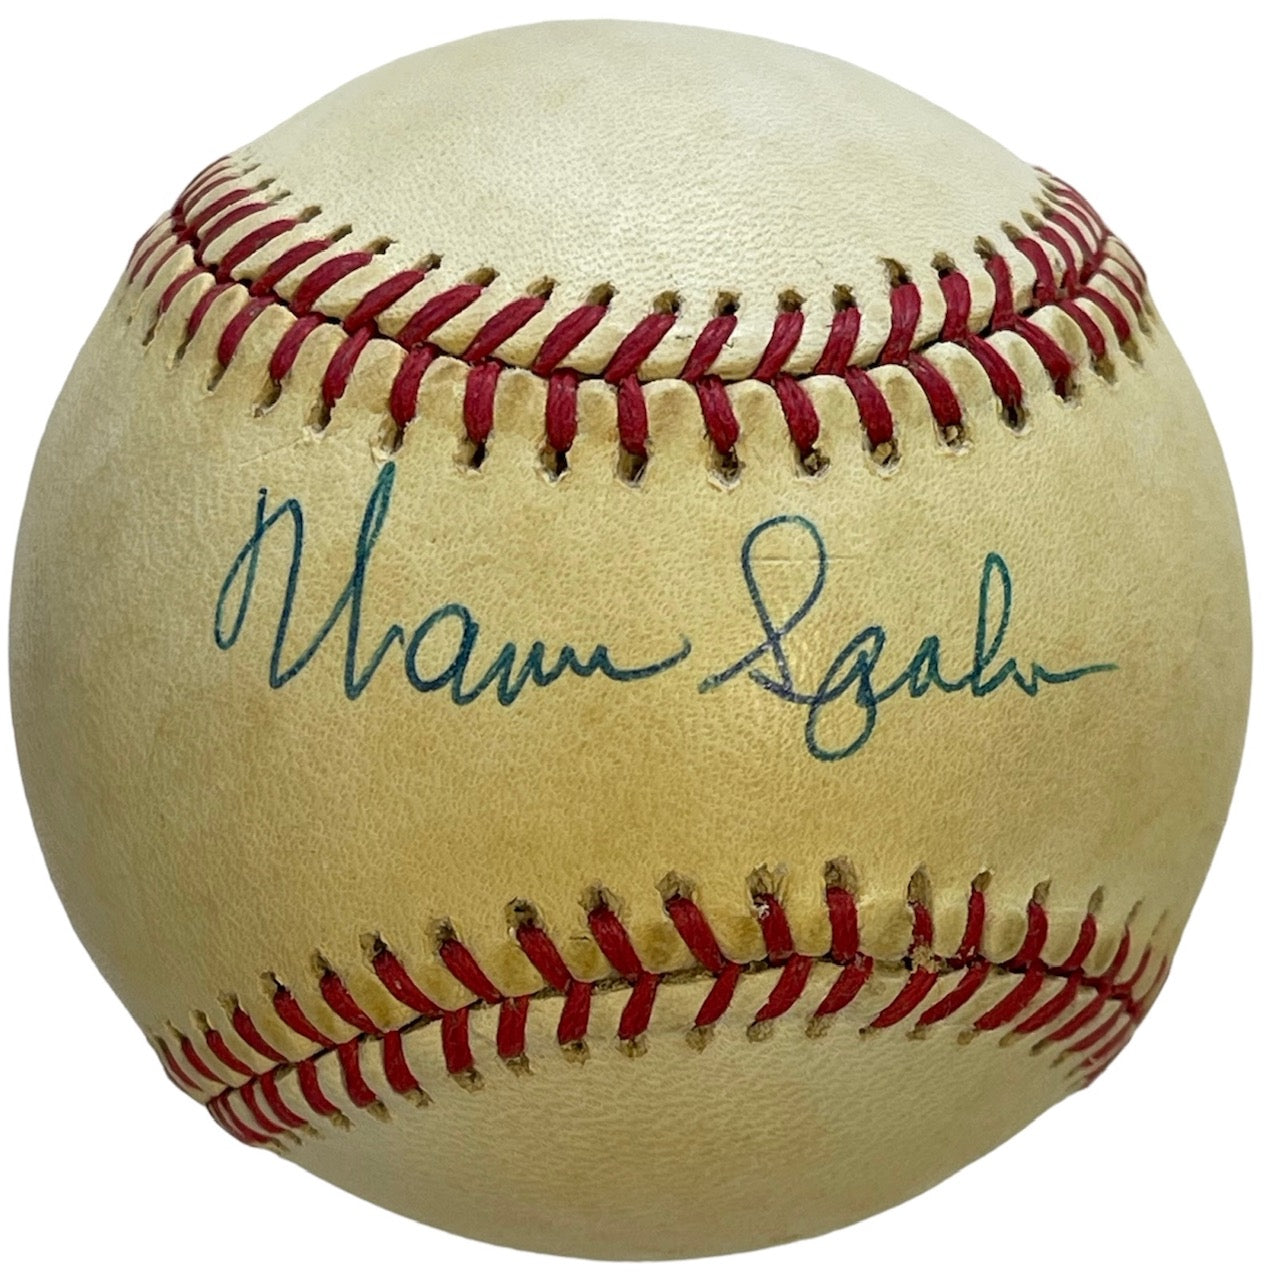 Warren Spahn Autographed Official National League Baseball (JSA